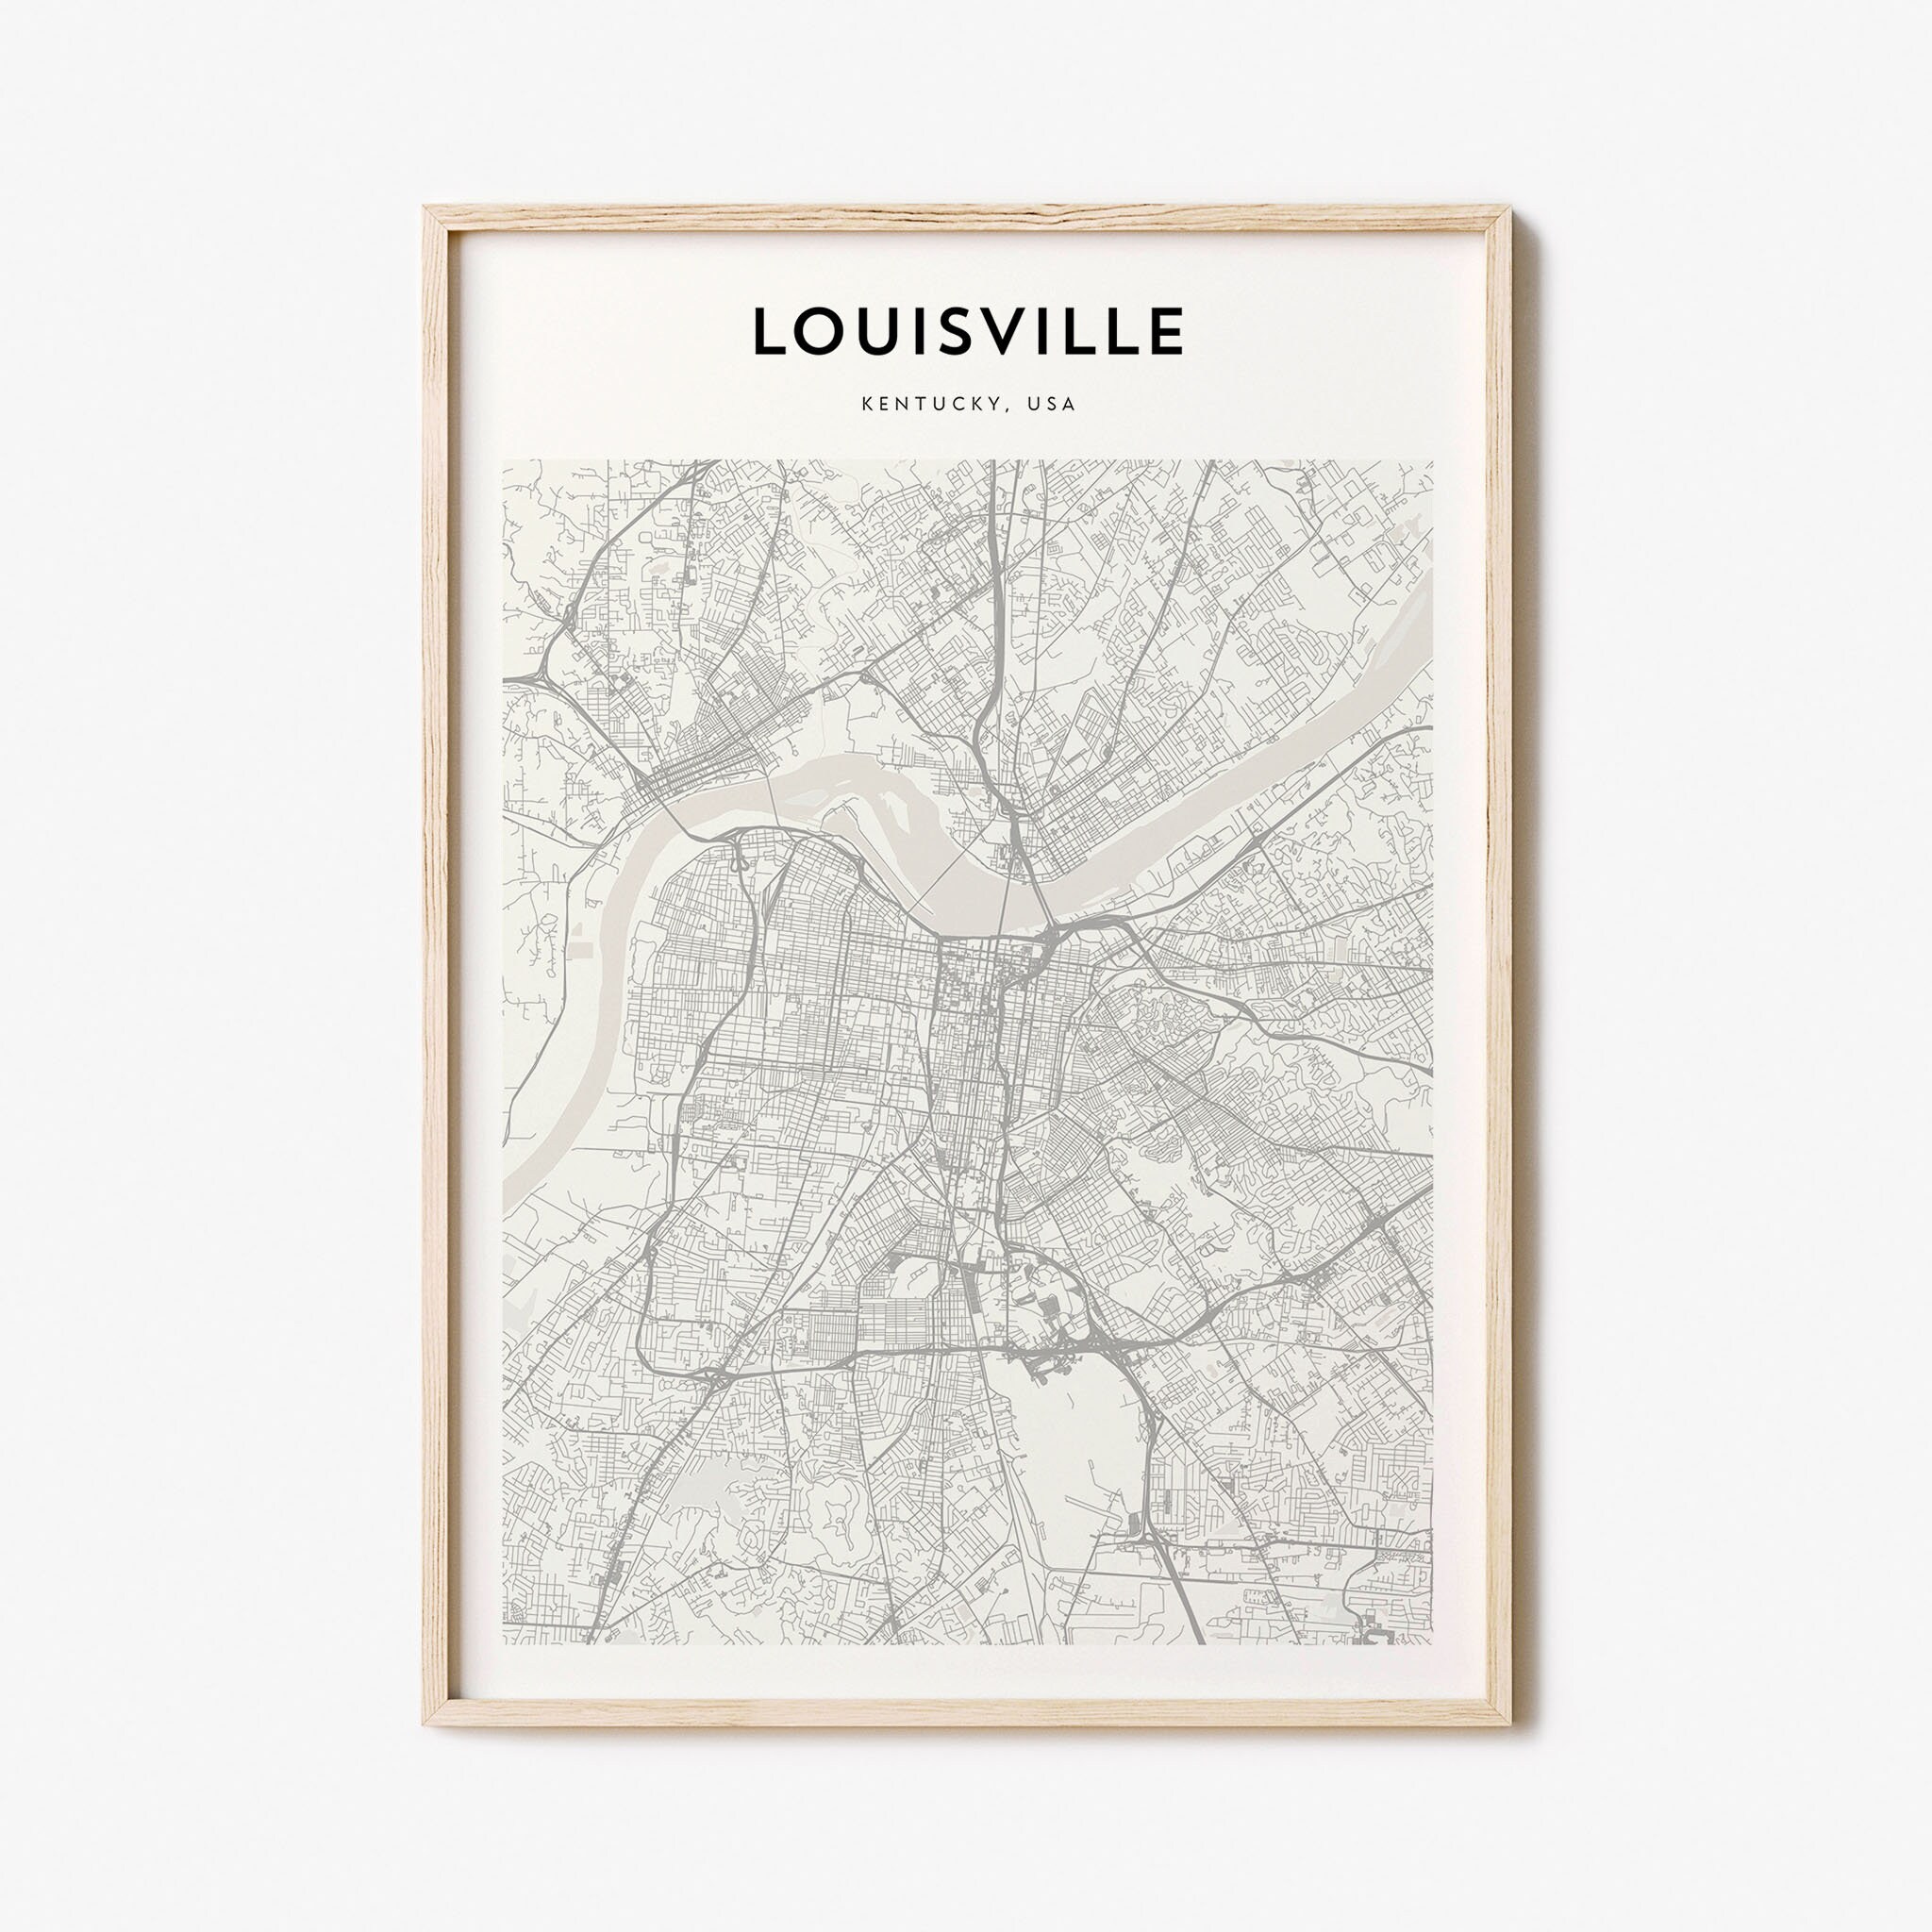 Louisville Map Keychain